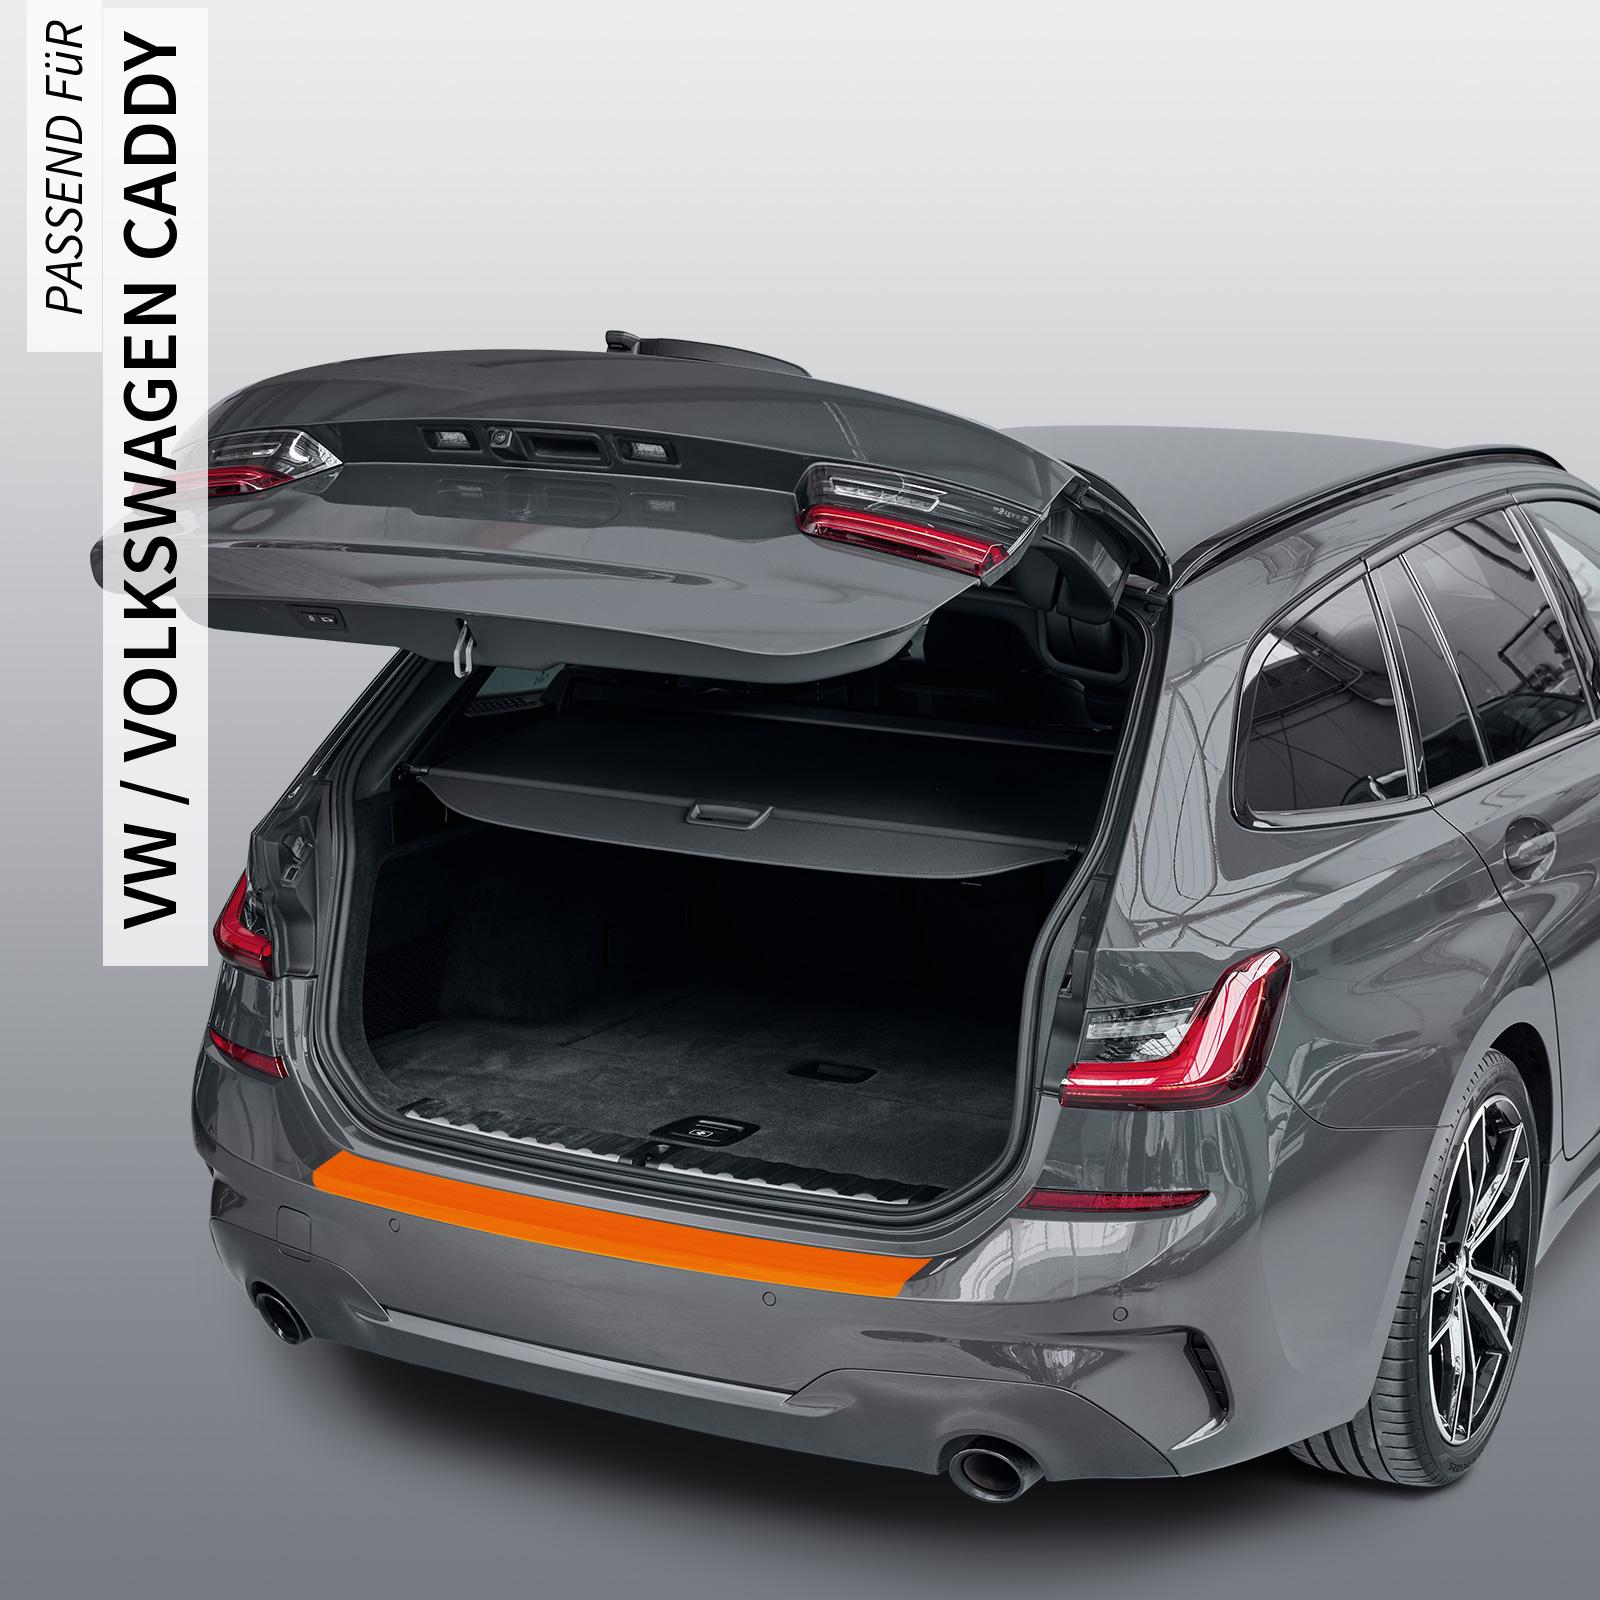 Ladekantenschutzfolie - Transparent Glatt MATT 110 µm stark  für VW / Volkswagen Caddy (V) ab BJ 11/2020